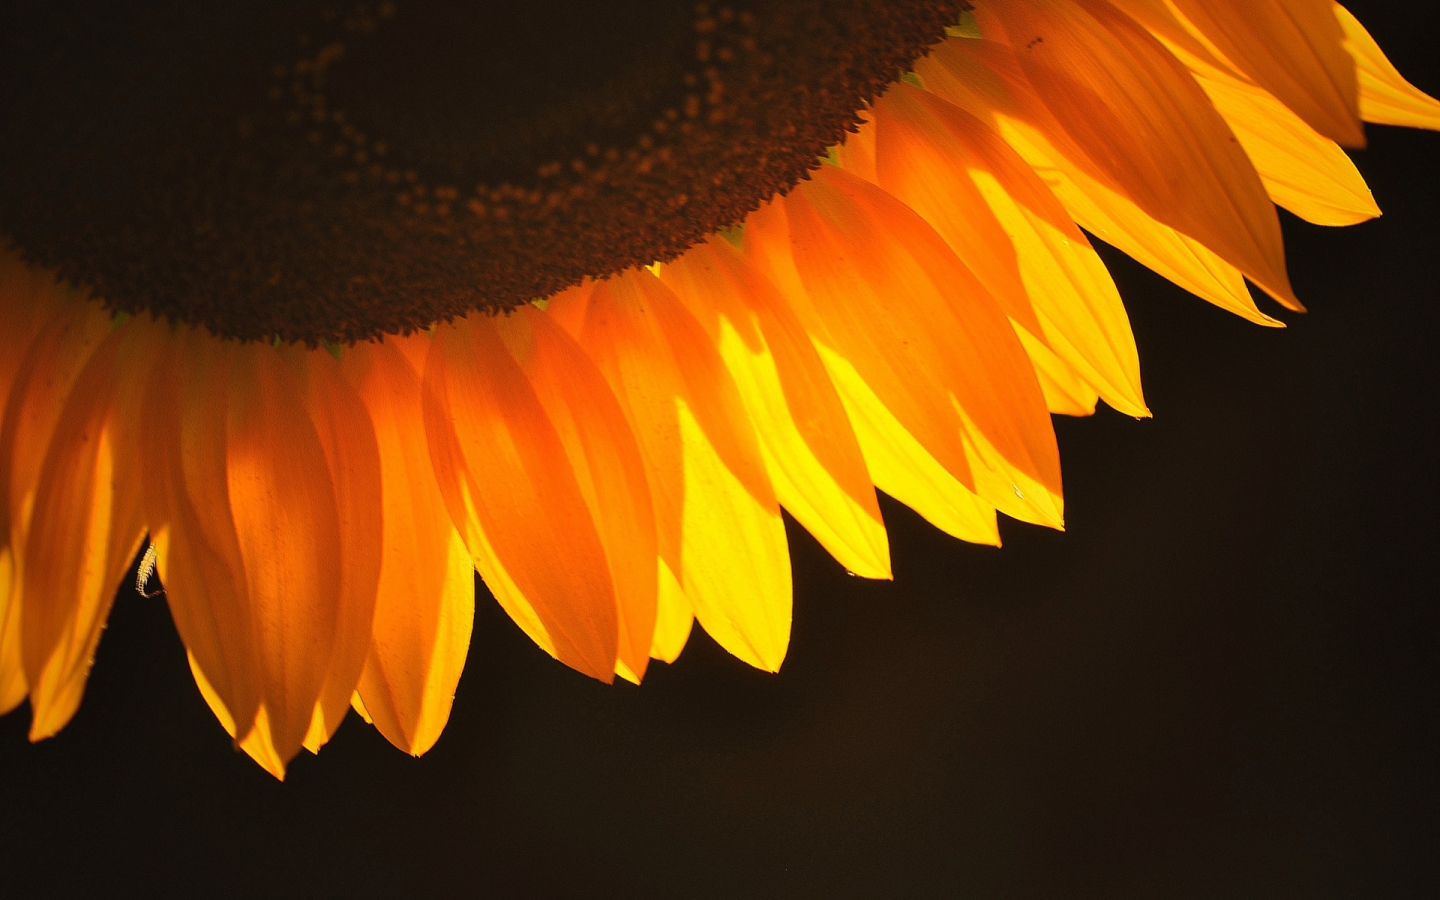 Sunflower Petals for 1440 x 900 widescreen resolution